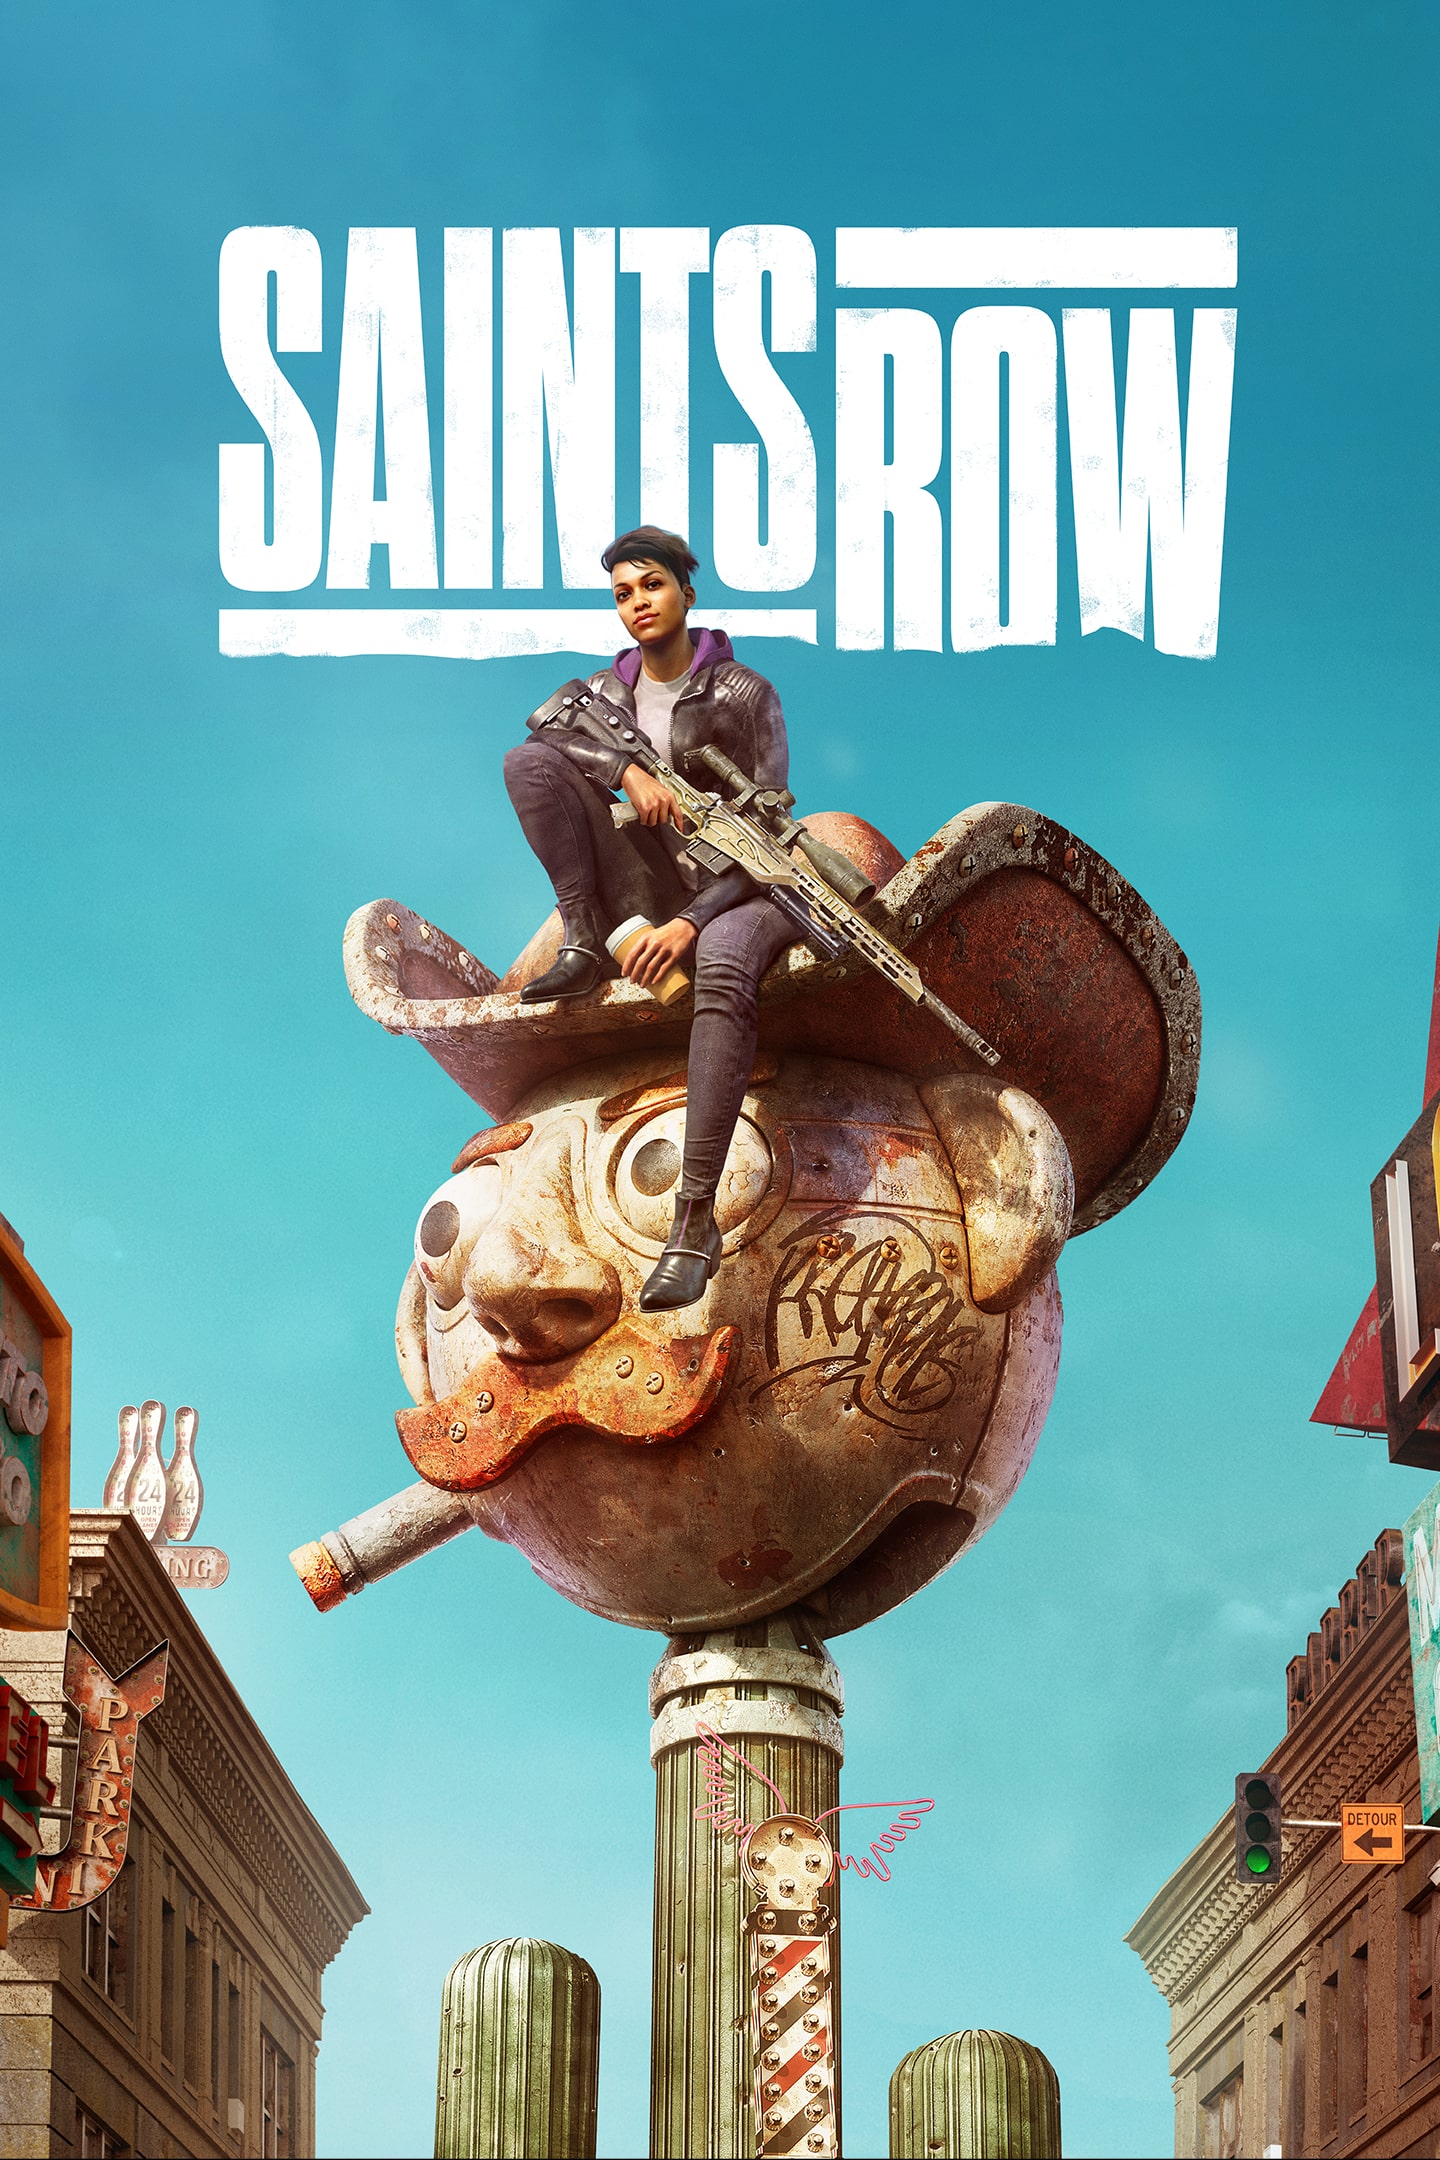 Saints Row LOW COST  PS4 & PS5 - Jogo Digital